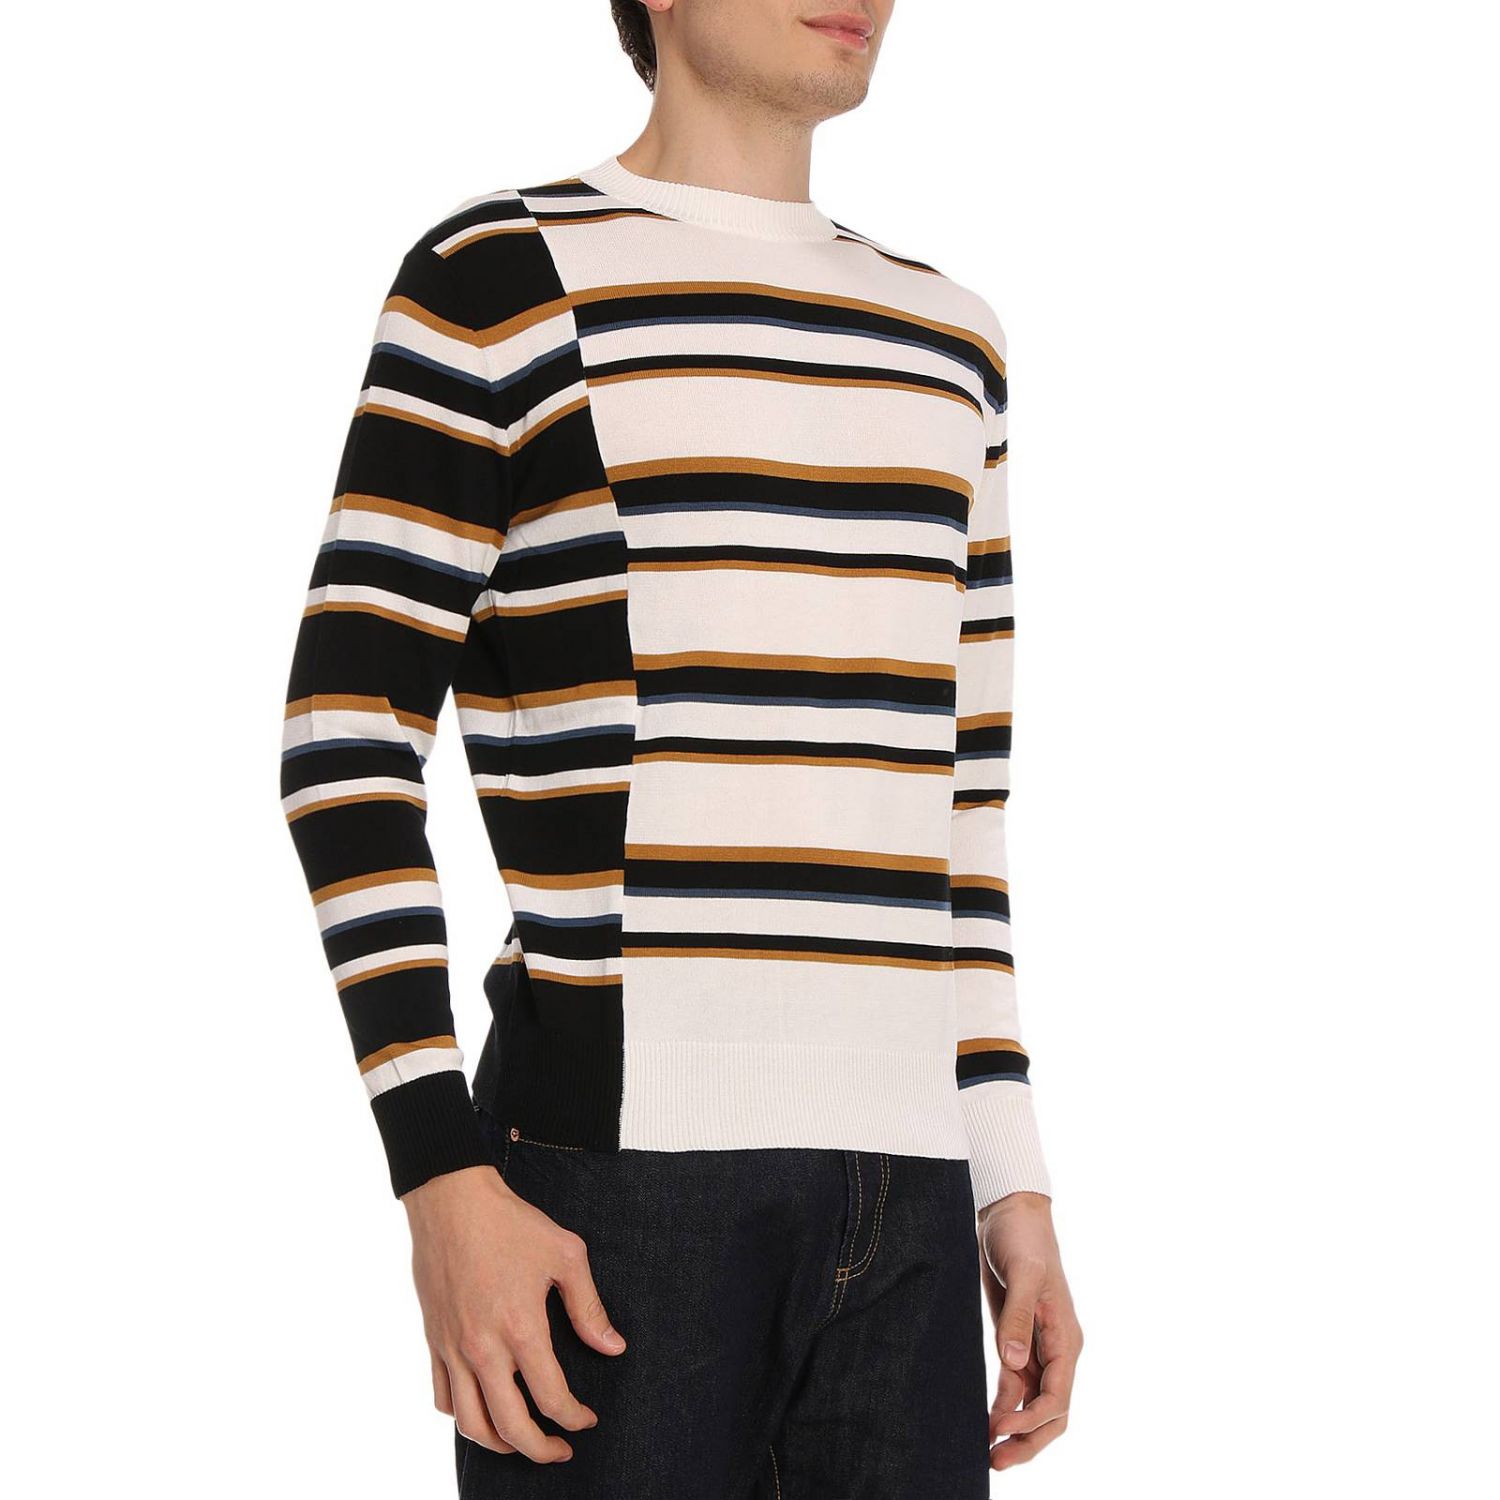 Maison Kitsuné Outlet: Sweater man - Striped | Maison Kitsuné Sweater ...